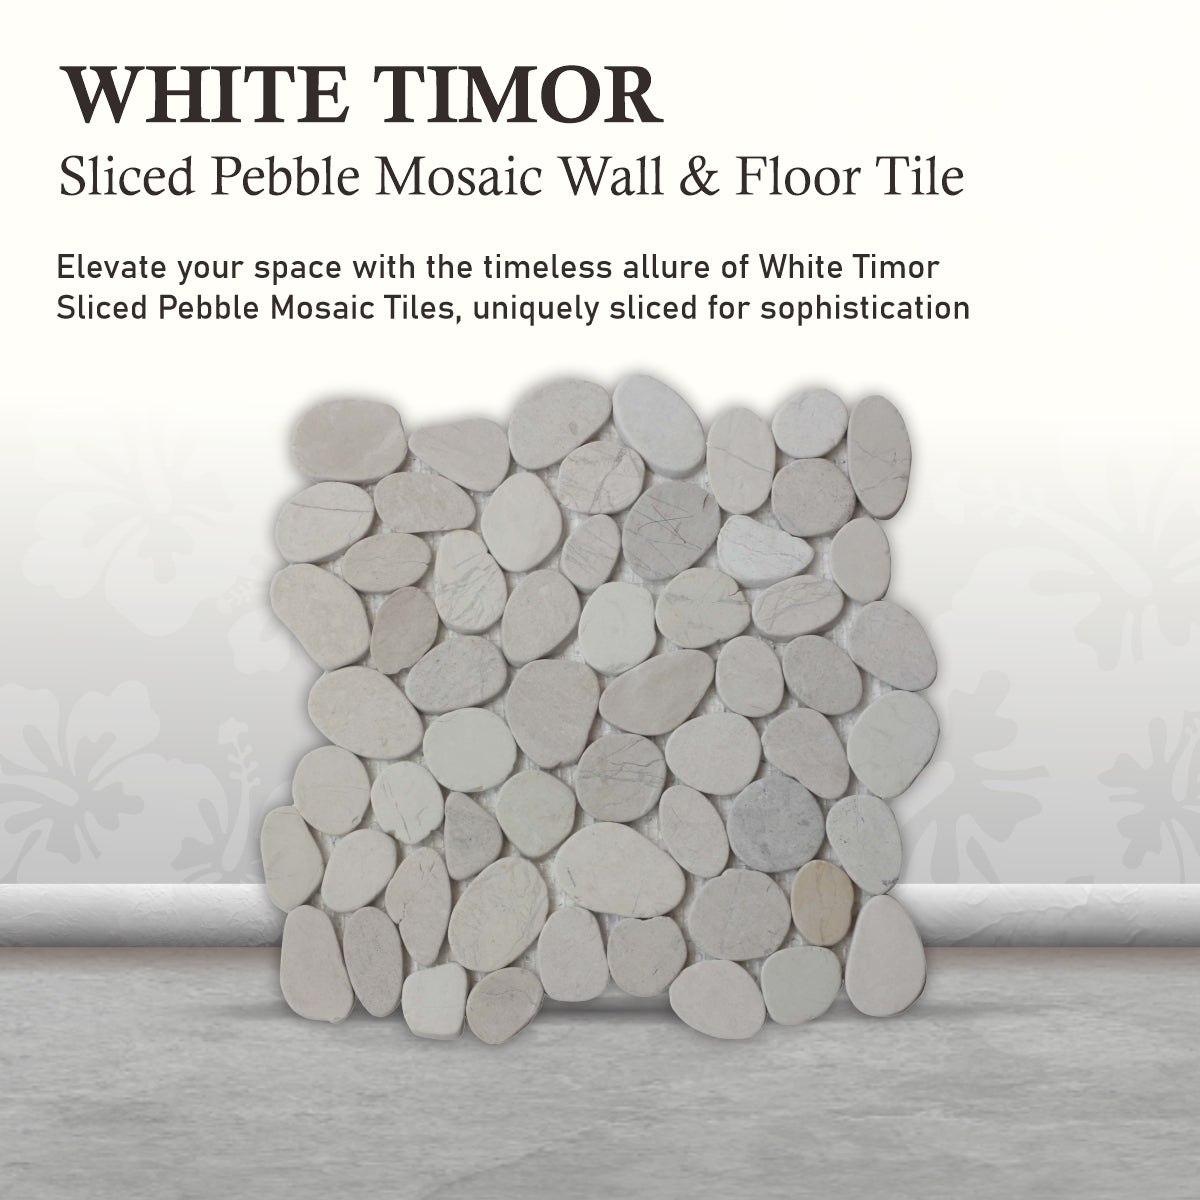 Timor White Pebbles Mosaic Tiles, Pebble Mosaic Wall & Floor Tile